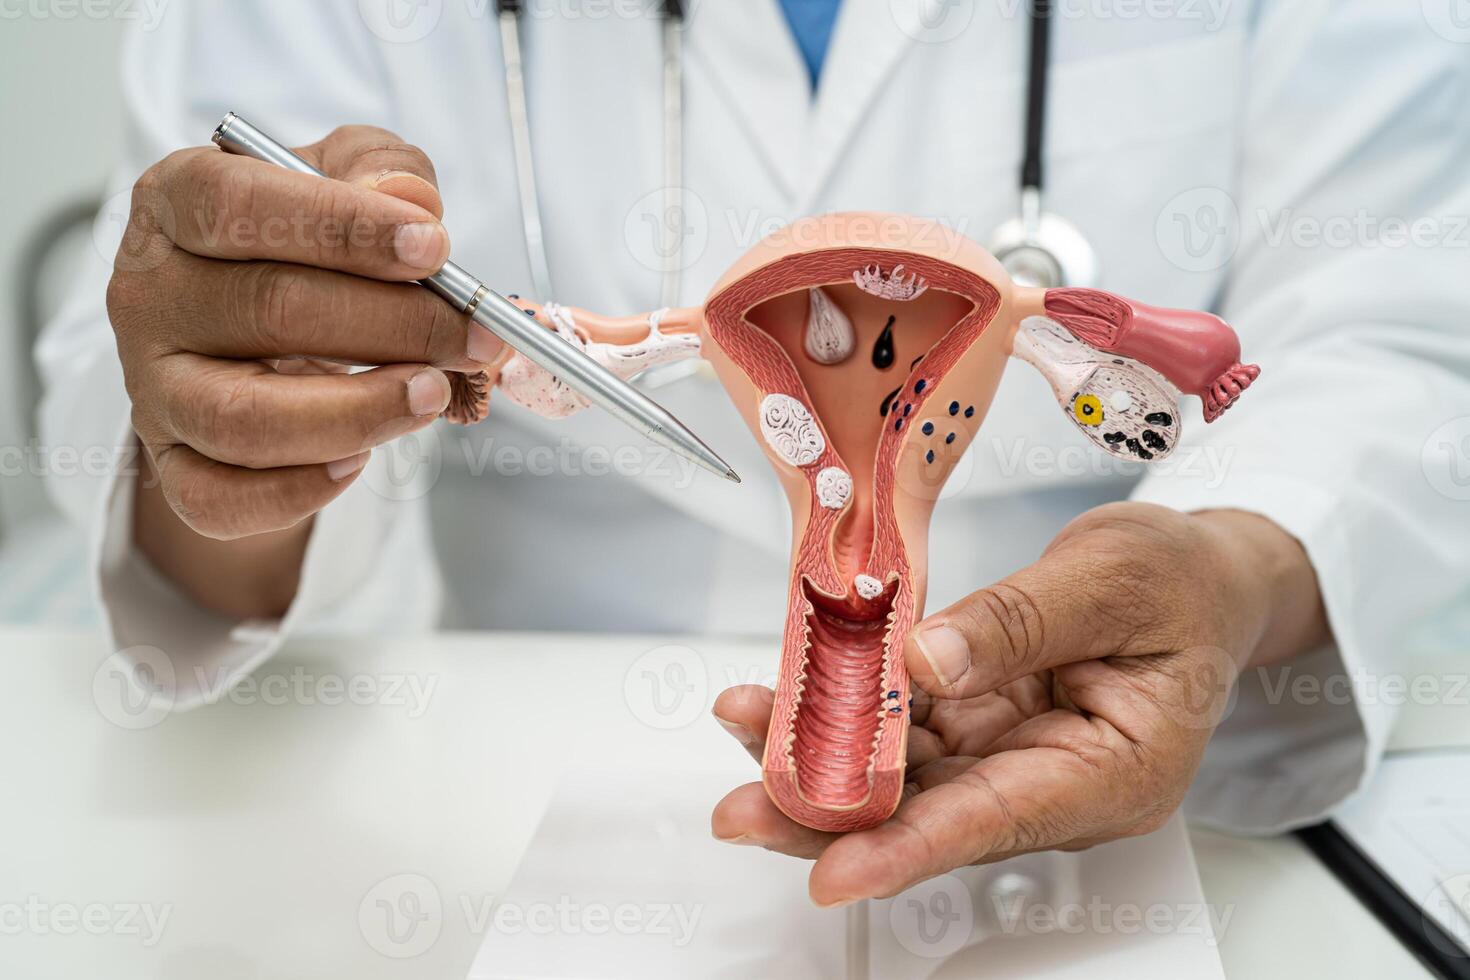 livmoder, läkare med anatomi modell för studie diagnos och behandling i sjukhus. foto